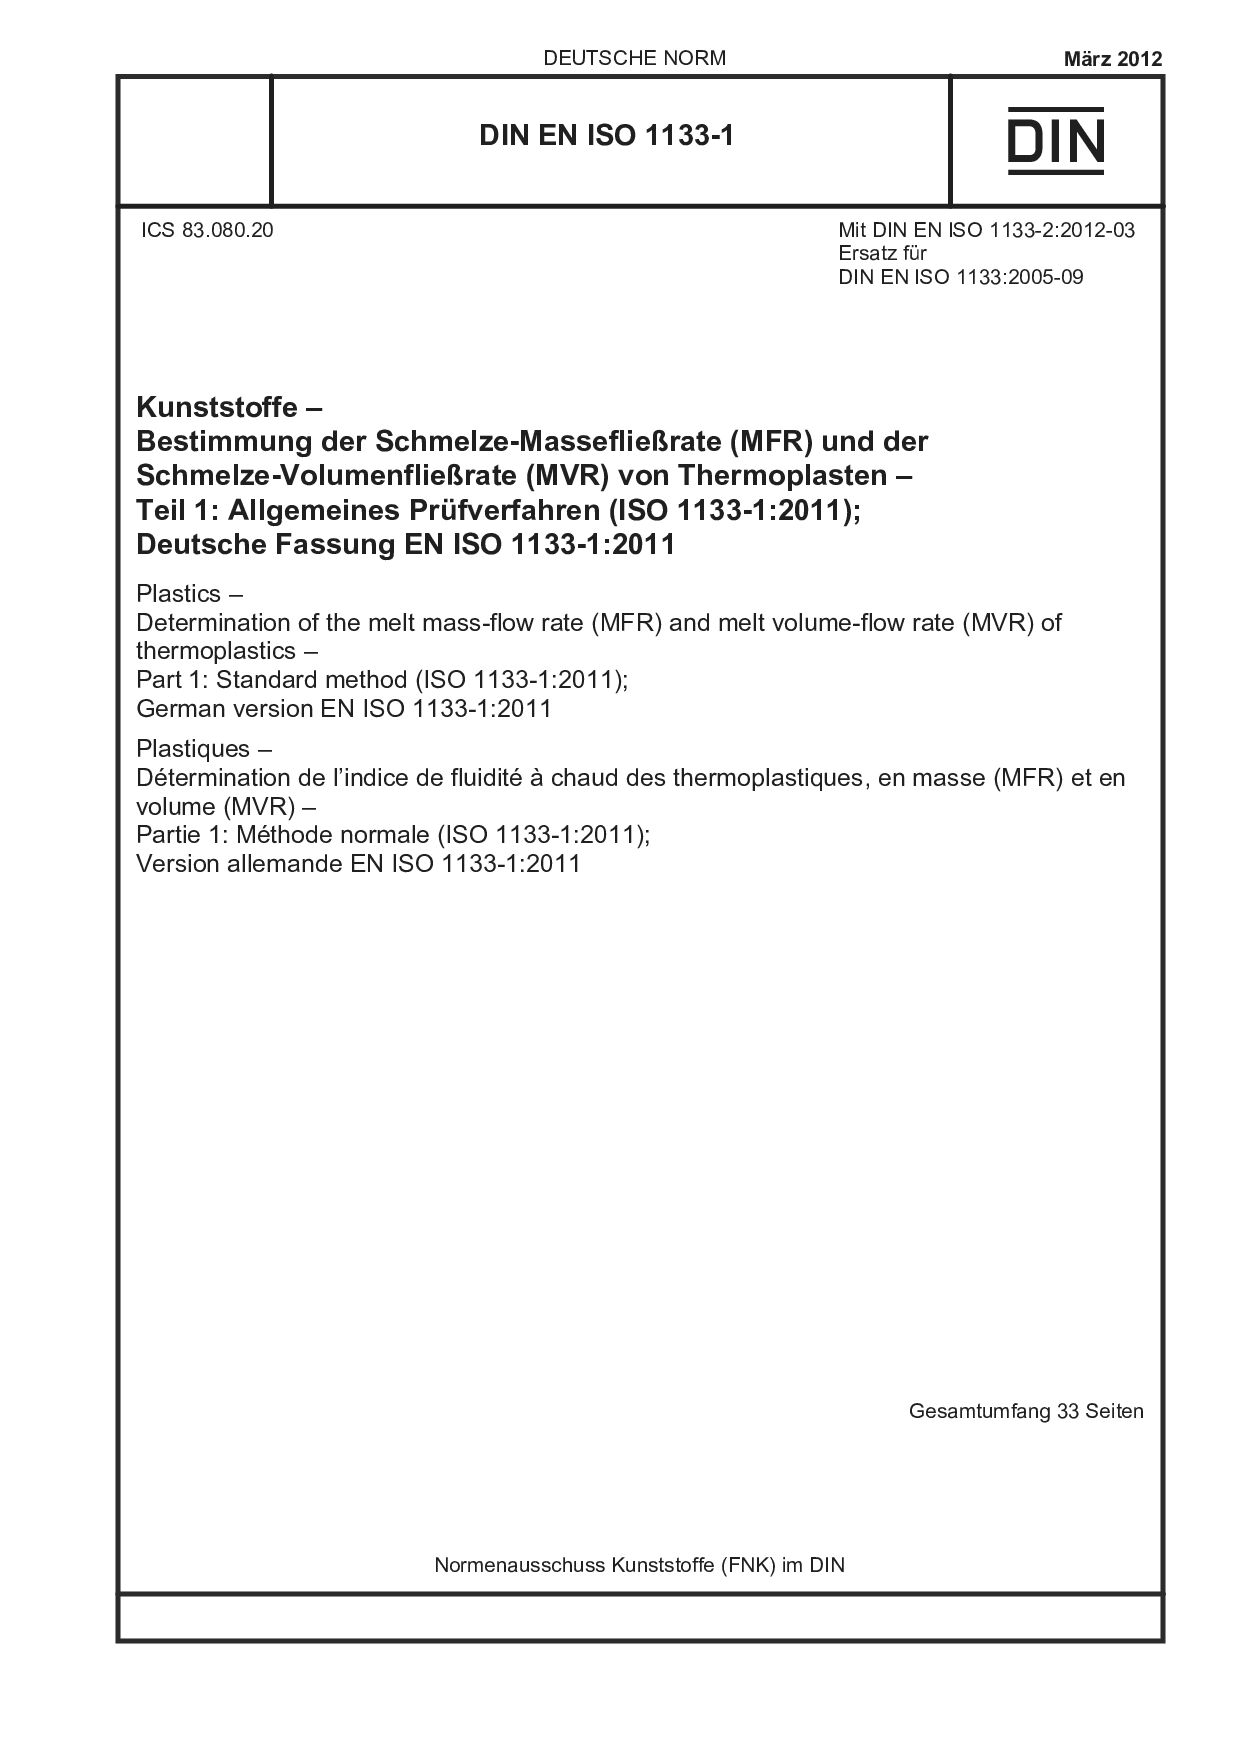 DIN EN ISO 1133-1:2012